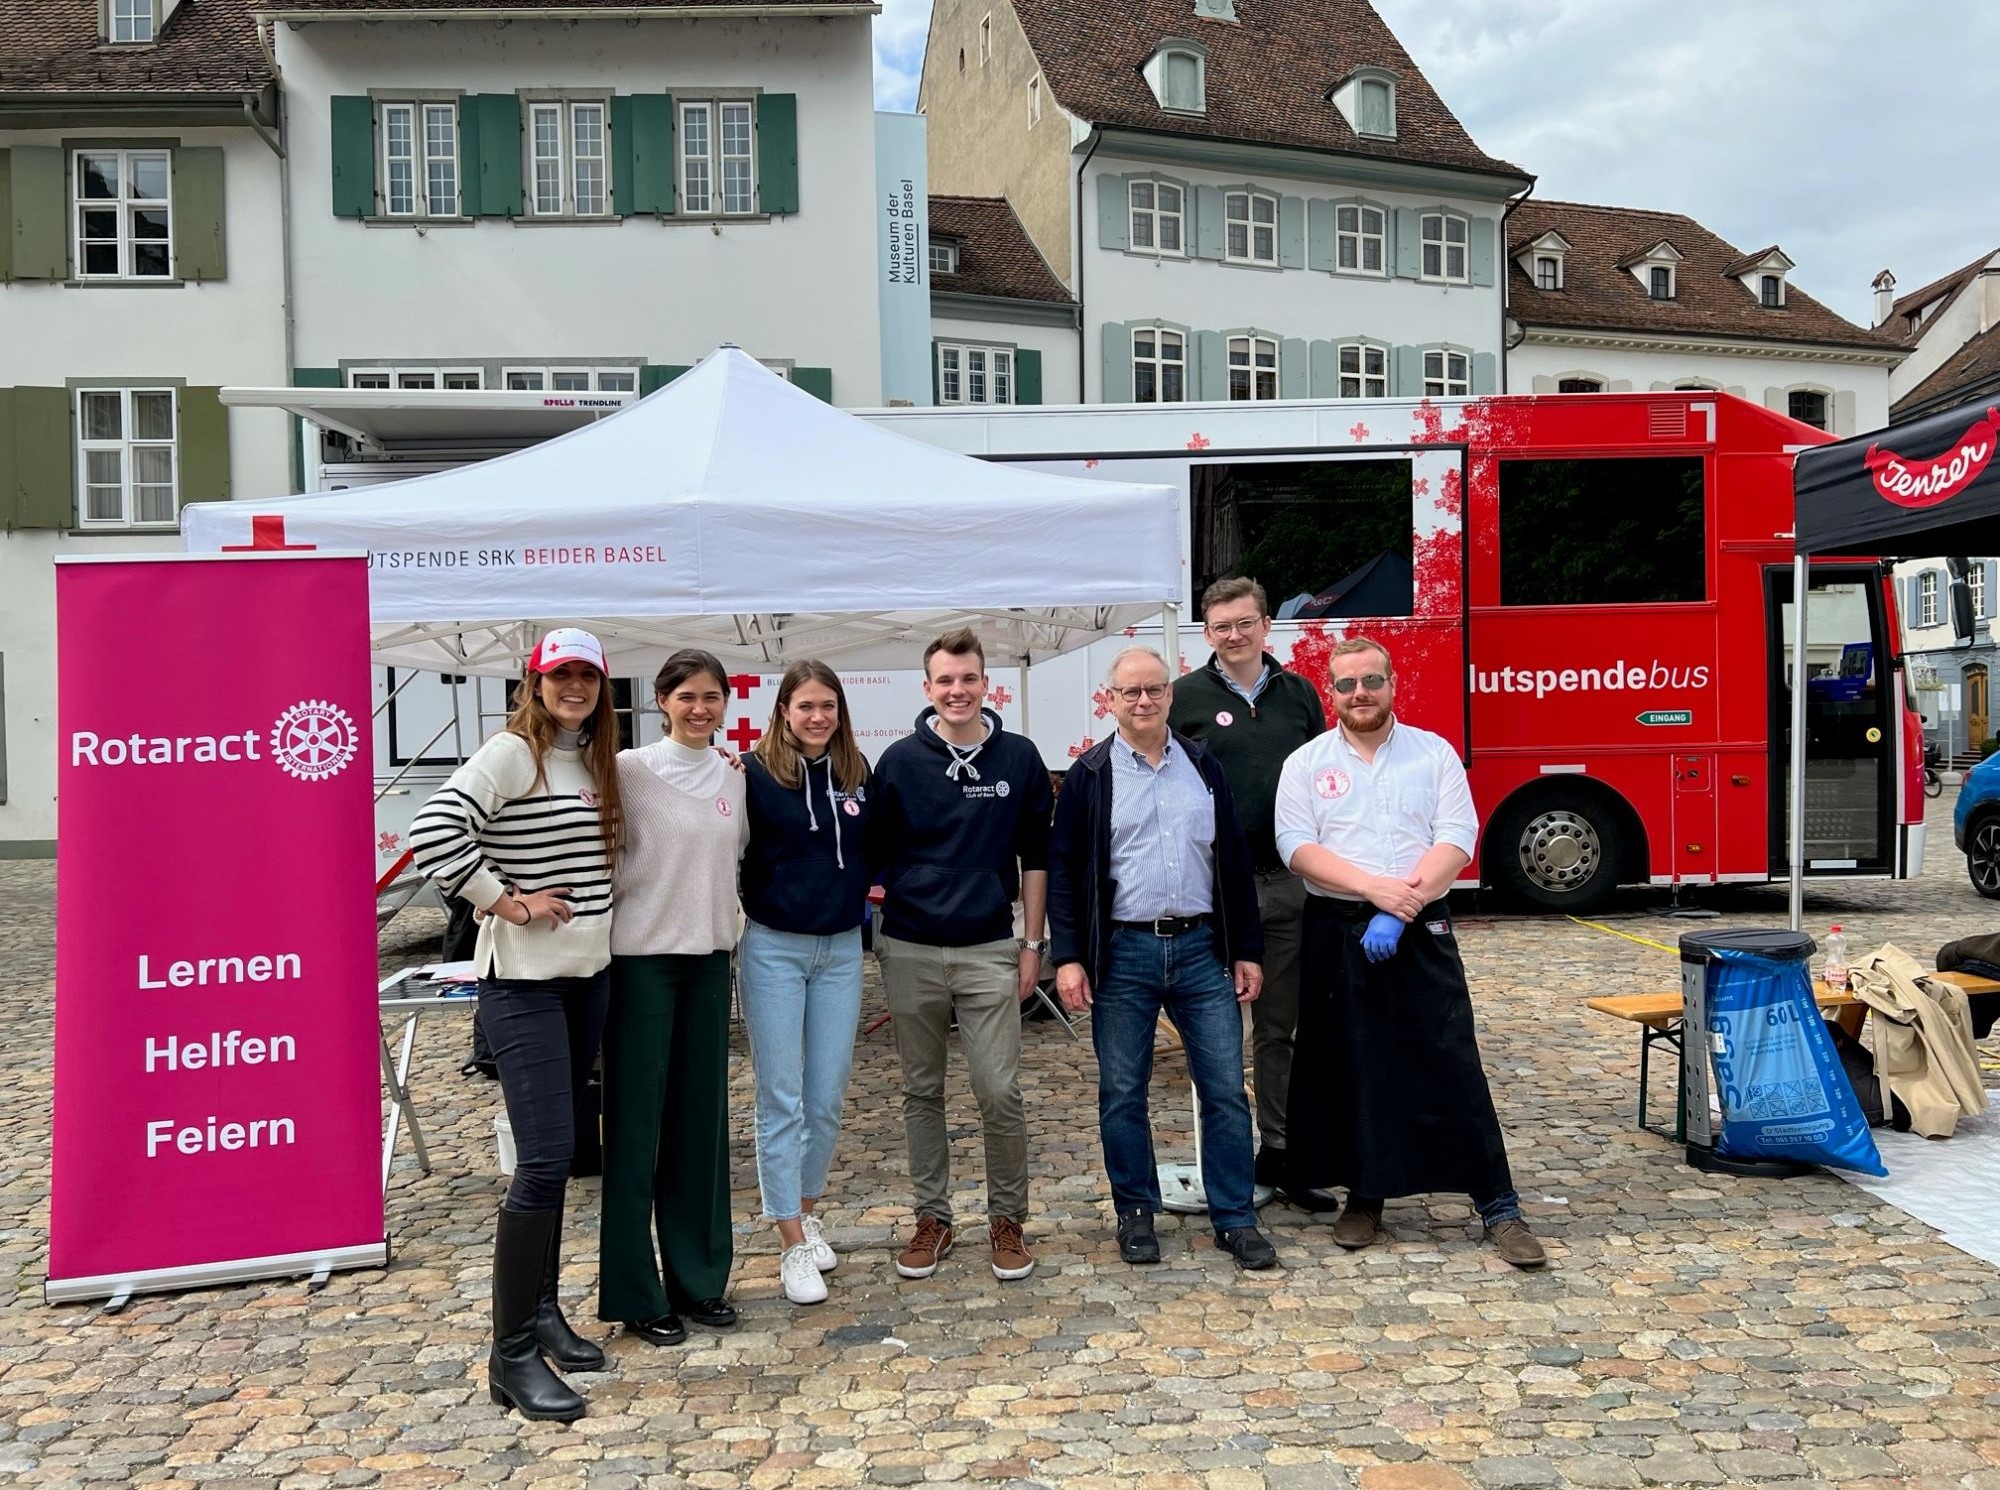 Il DG Alex Schär ha visitato la campagna di donazione di sangue del Rotaract Club Basel.